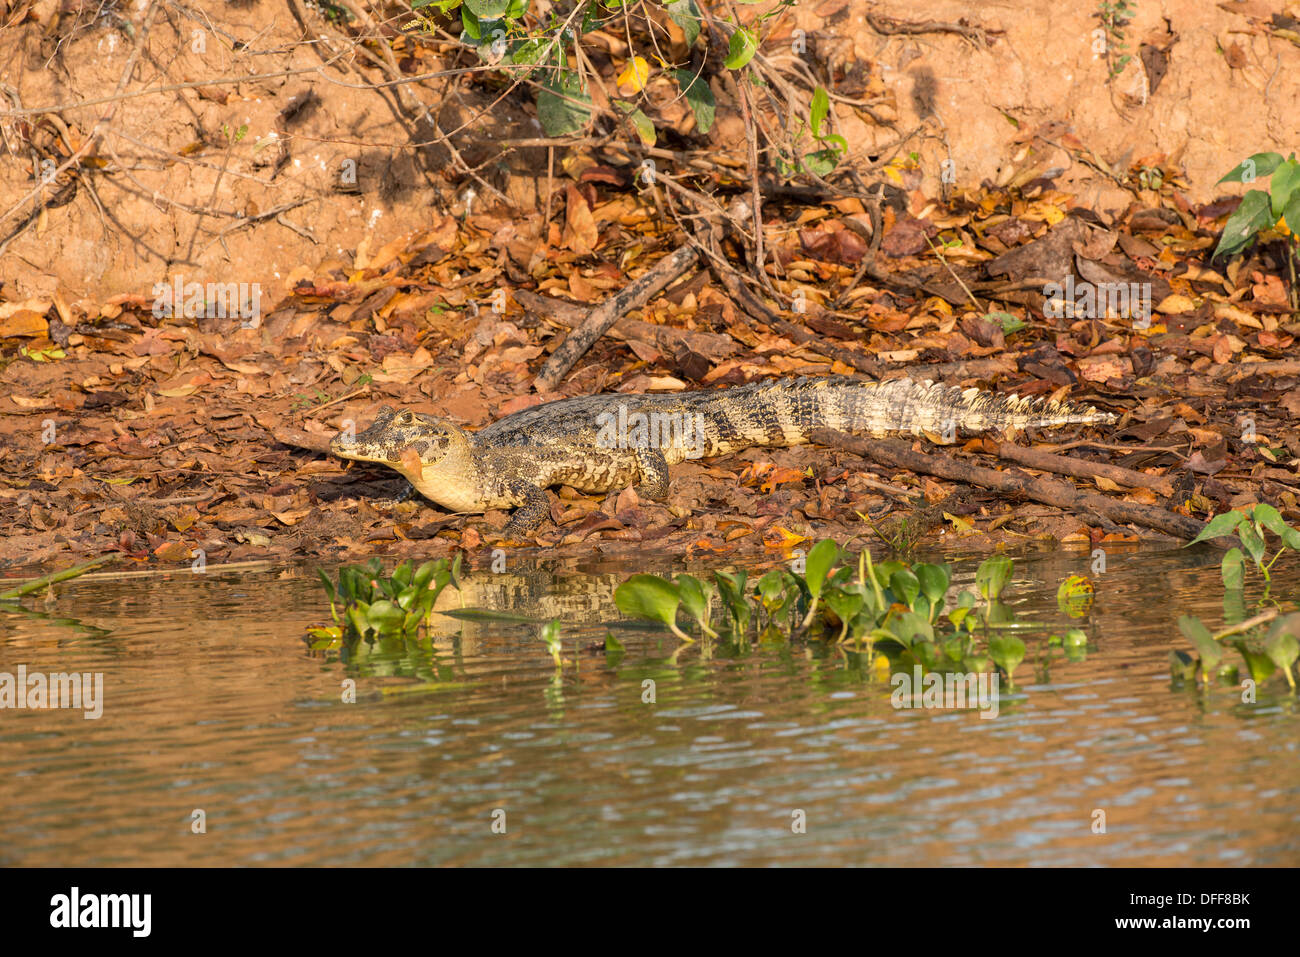 Stock Foto von brillentragende Kaimane Ruhe am Ufer des Flusses, Pantanal, Brasilien. Stockfoto